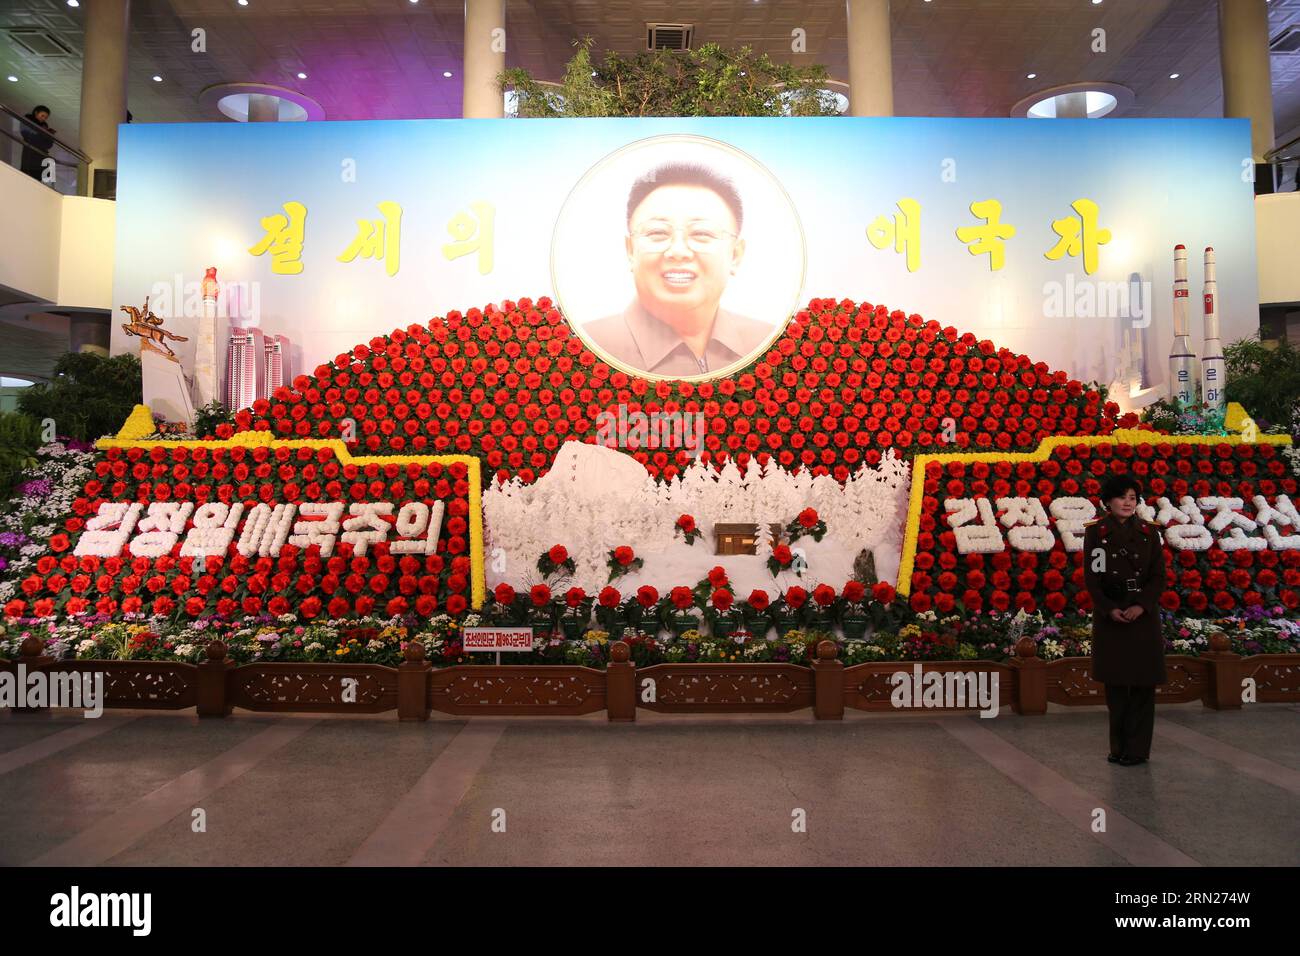 (150214) -- PJÖNGJANG, 13. Februar 2015 zeigt die 19. Kimjongilia-Ausstellung in Pjöngjang, der Demokratischen Volksrepublik Korea (DVRK). Kimjongilia-Blumen, benannt nach dem verstorbenen Führer der DVRK Kim Jong Il, sind vor kurzem in Pjöngjang zu sehen. Die DVRK veranstaltet seit 1996 alle Mitte Februar eine Ausstellung über Kimjongilia, um den Geburtstag von Kim Jong Il zu feiern, der am 16. Februar stattfindet. (dzl) DPRK-PJÖNGJANG-KIM JONG IL-KIMJONGILIA AUSSTELLUNG LuxRui PUBLICATIONxNOTxINxCHN Pjöngjang 13. Februar 2015 zeigt die 19. Ausstellung in Pjöngjang die Demokratischen Prominenten S Republik Korea DVRK Blumen N Stockfoto